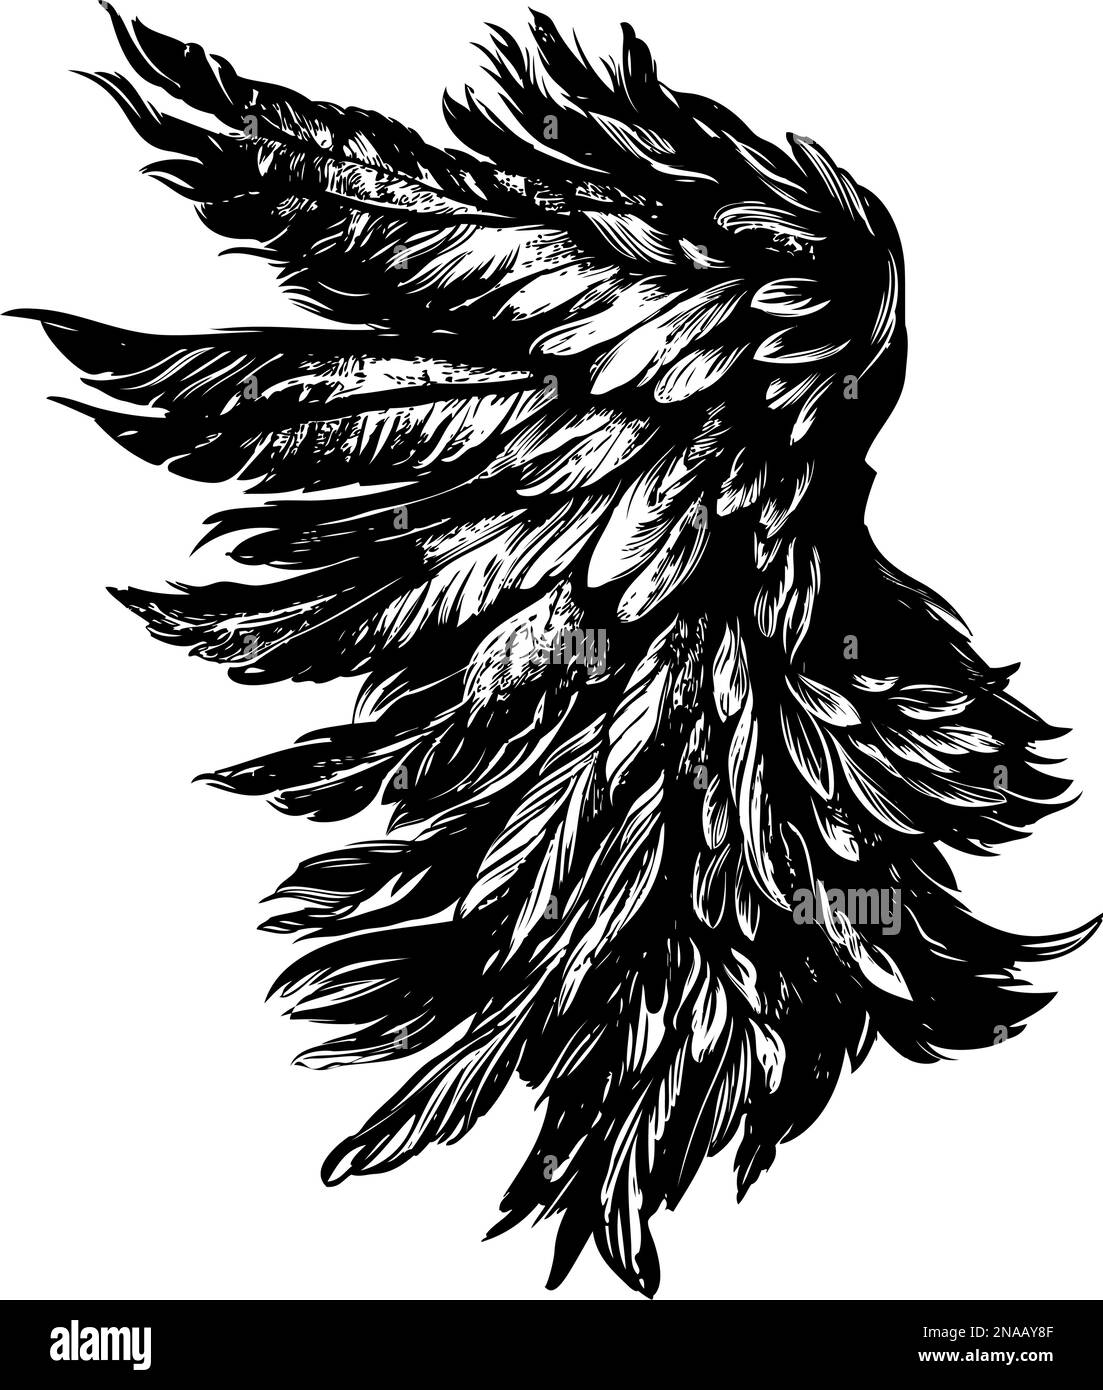 Angel Wings, Bird Wings collection dessin animé dessin main dessin vectoriel illustration esquisse. Illustration de Vecteur